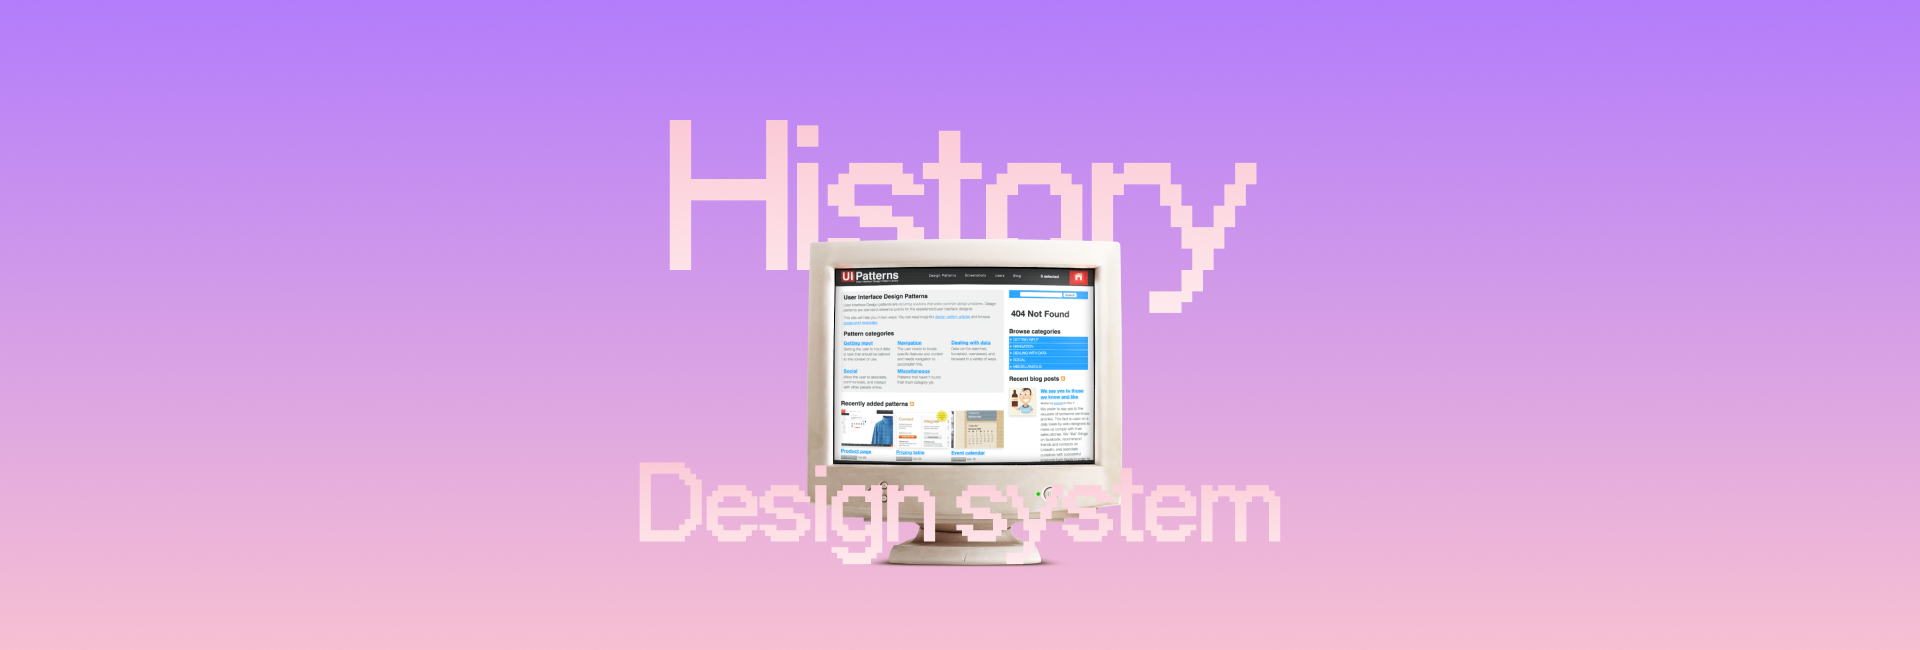 3 bài học từ lịch sử phát triển của design system